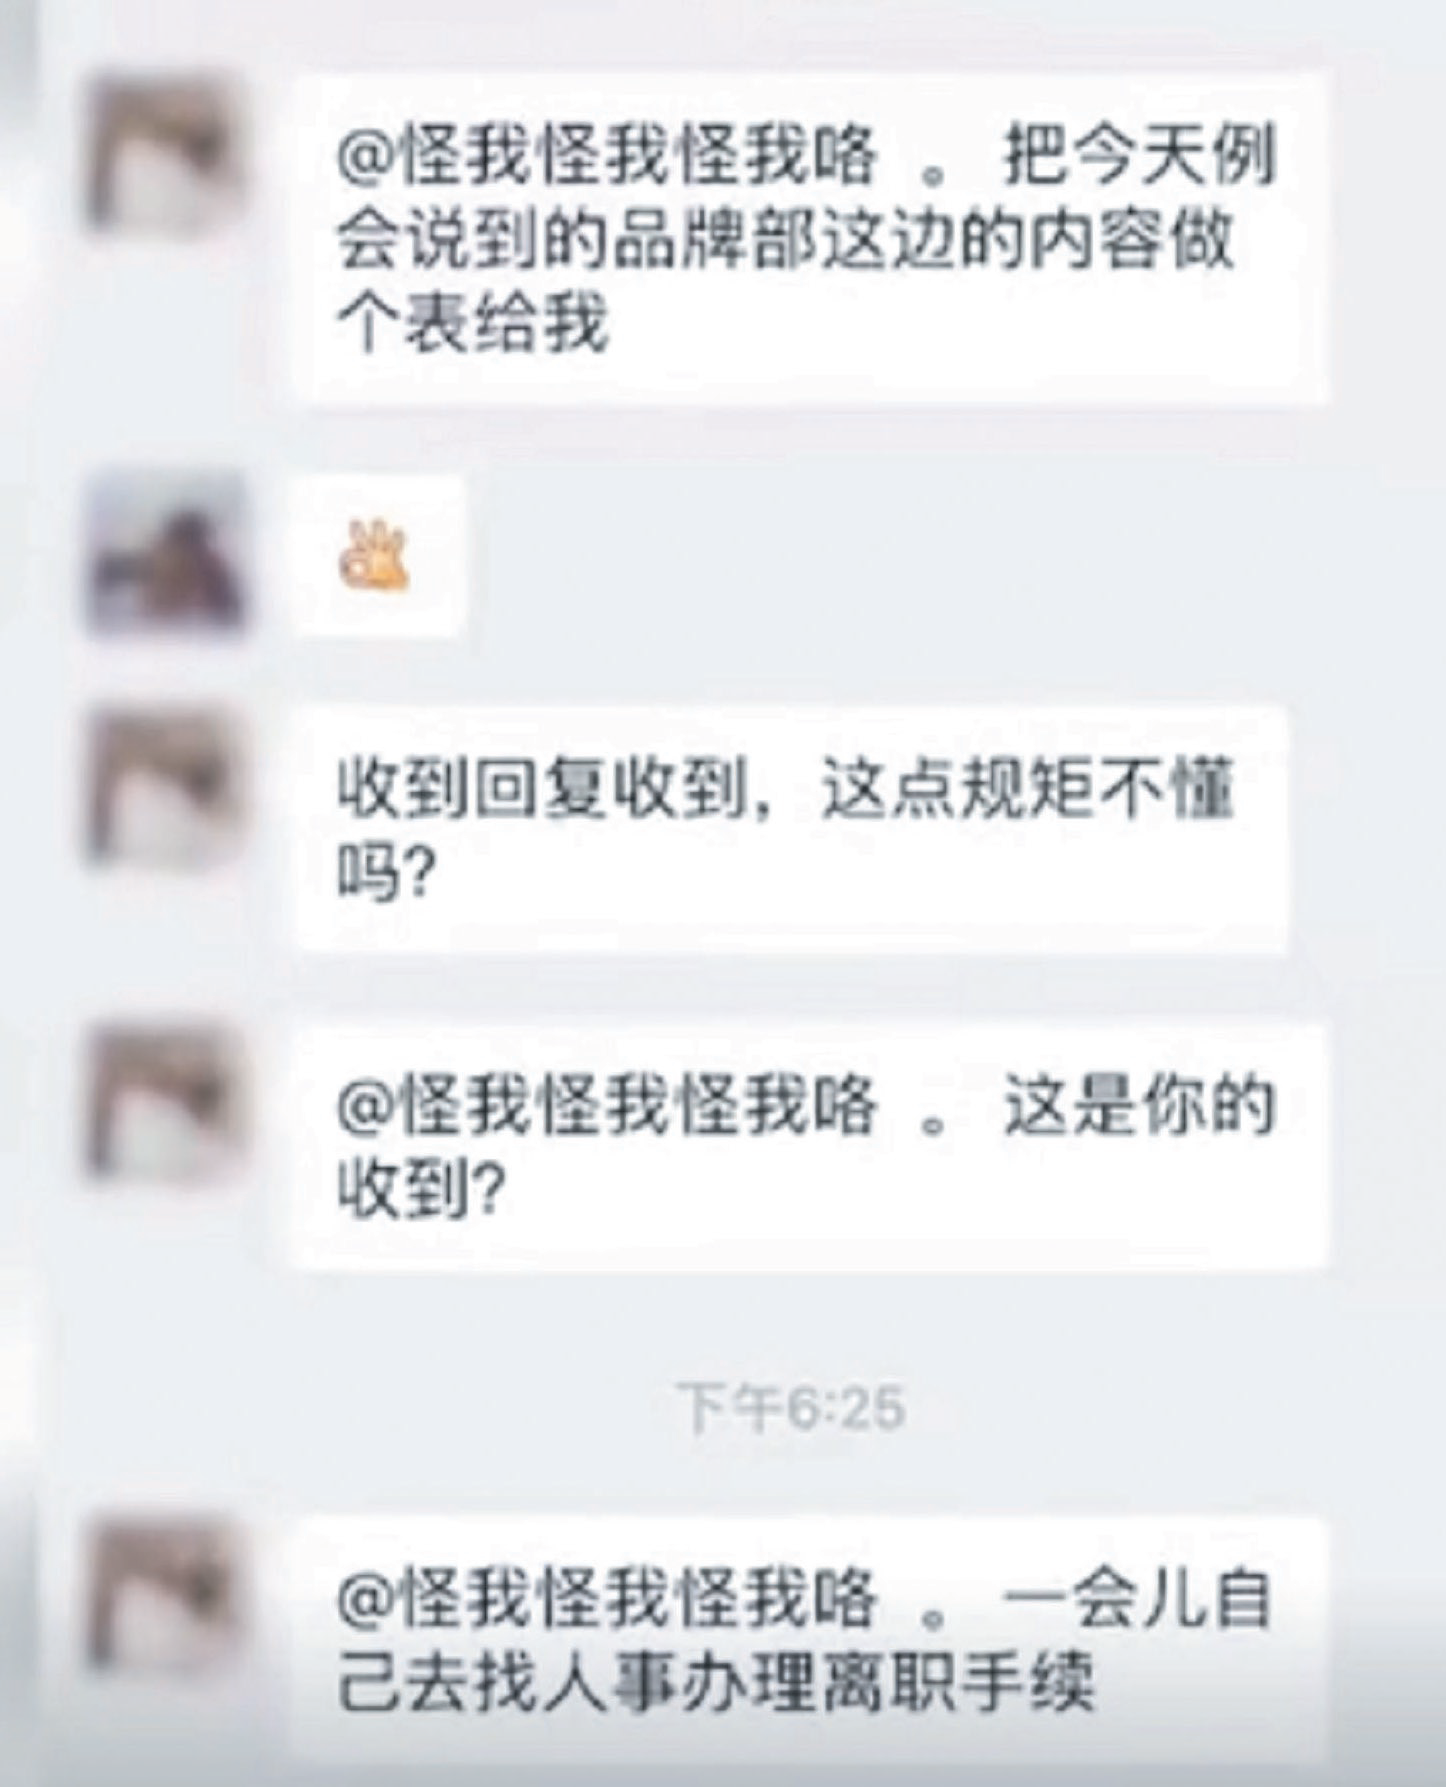 中国湖南长沙一间酒吧女员工在社交媒体上发布一张微信群组对话截图，因使用了“OK”的Emoji后，即被上司开除。